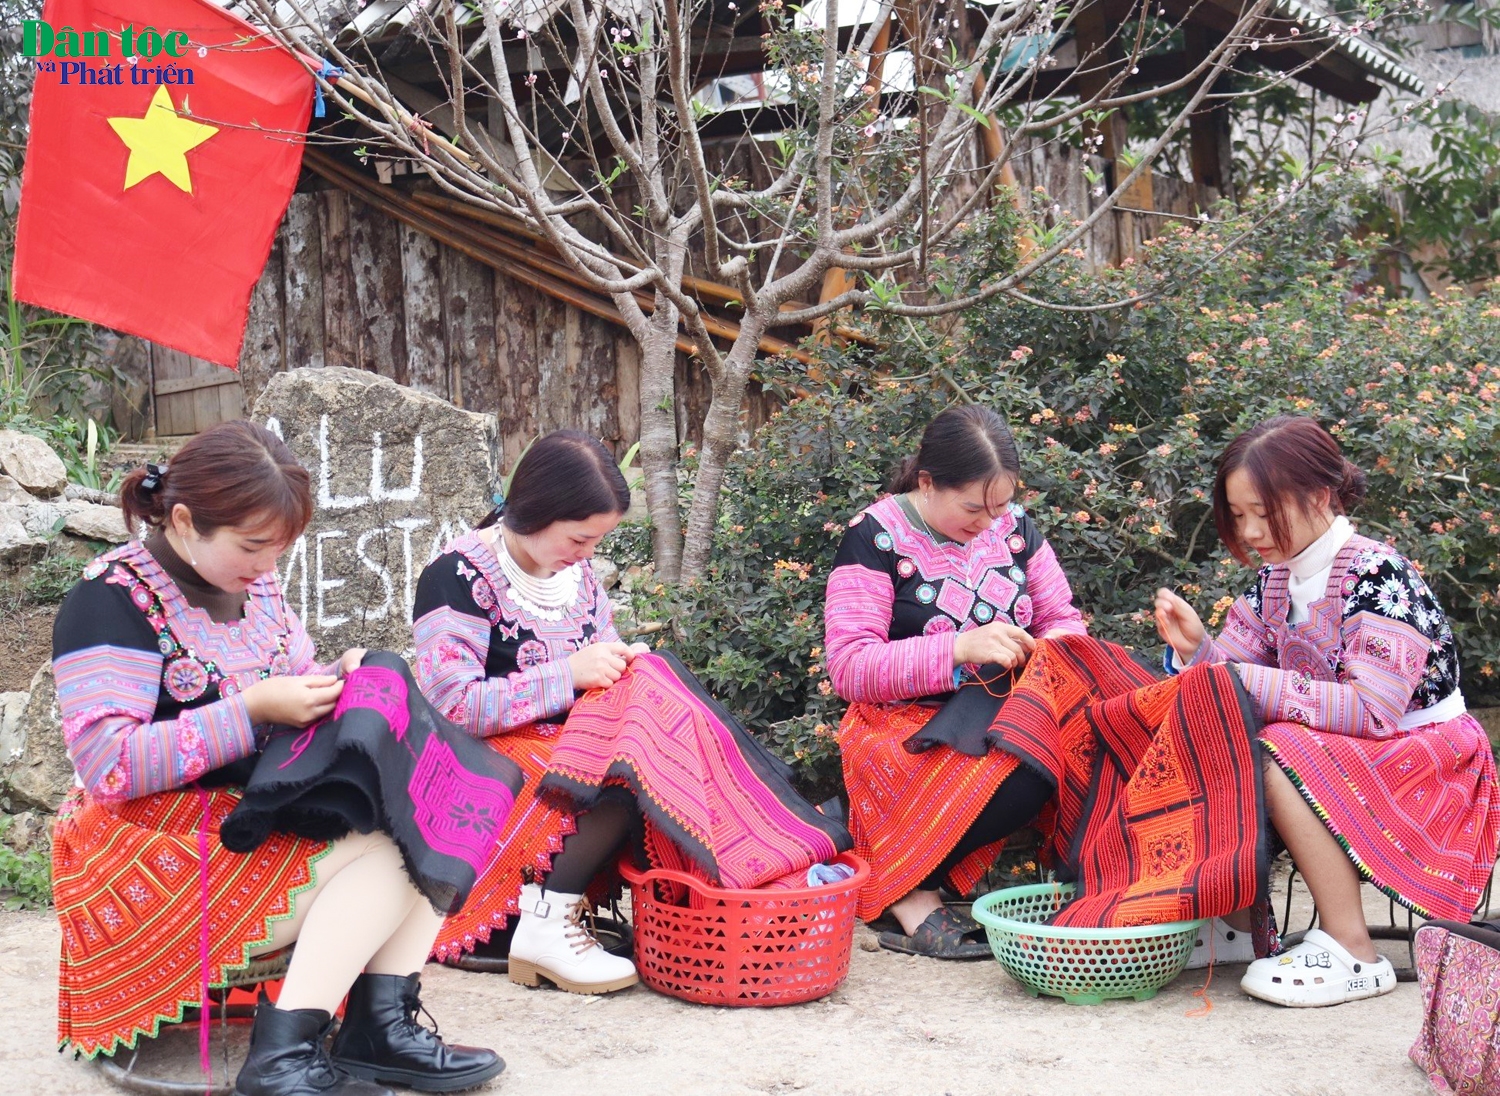 Phụ nữ Mông ai cũng biết thêu thùa, may vá. Những lúc rảnh dỗi, họ lại tranh thủ mang vải ra thêu để ngày tết người thân của họ ai cũng có bộ quần áo mới